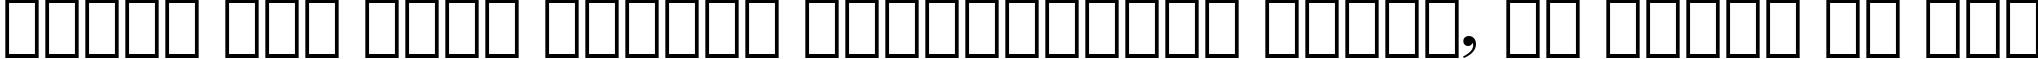 Пример написания шрифтом Bodoni Bold Italic BT текста на русском